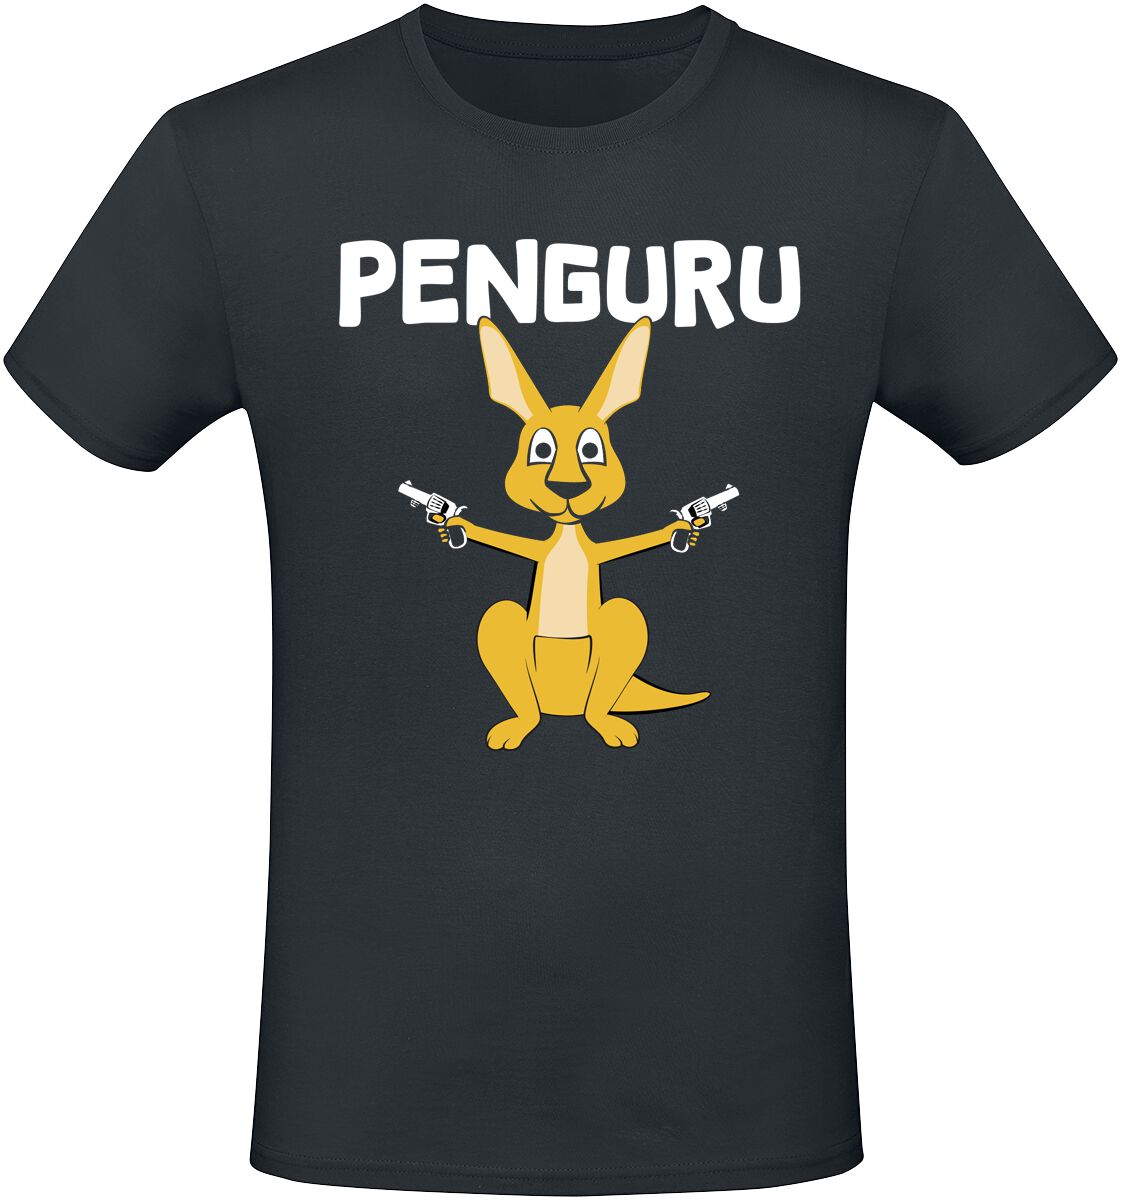 Tierisch T-Shirt - Penguru - M bis 3XL - für Männer - Größe XL - schwarz